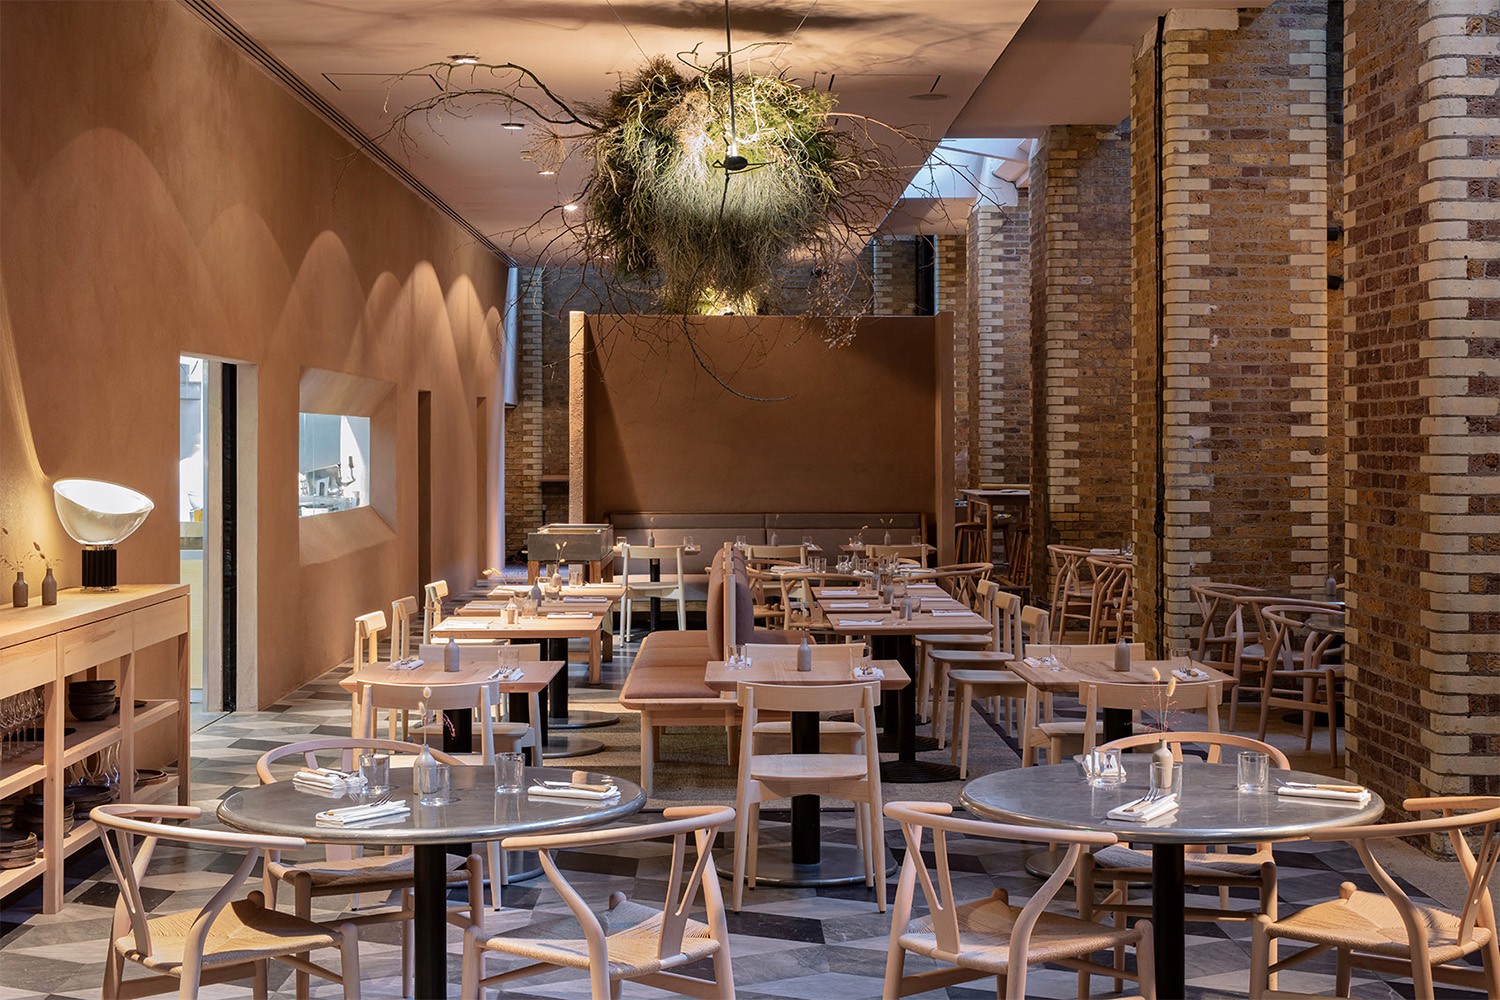 澳门伦敦人的丘吉尔餐厅为饕客带来英式用餐体验 - BANG!